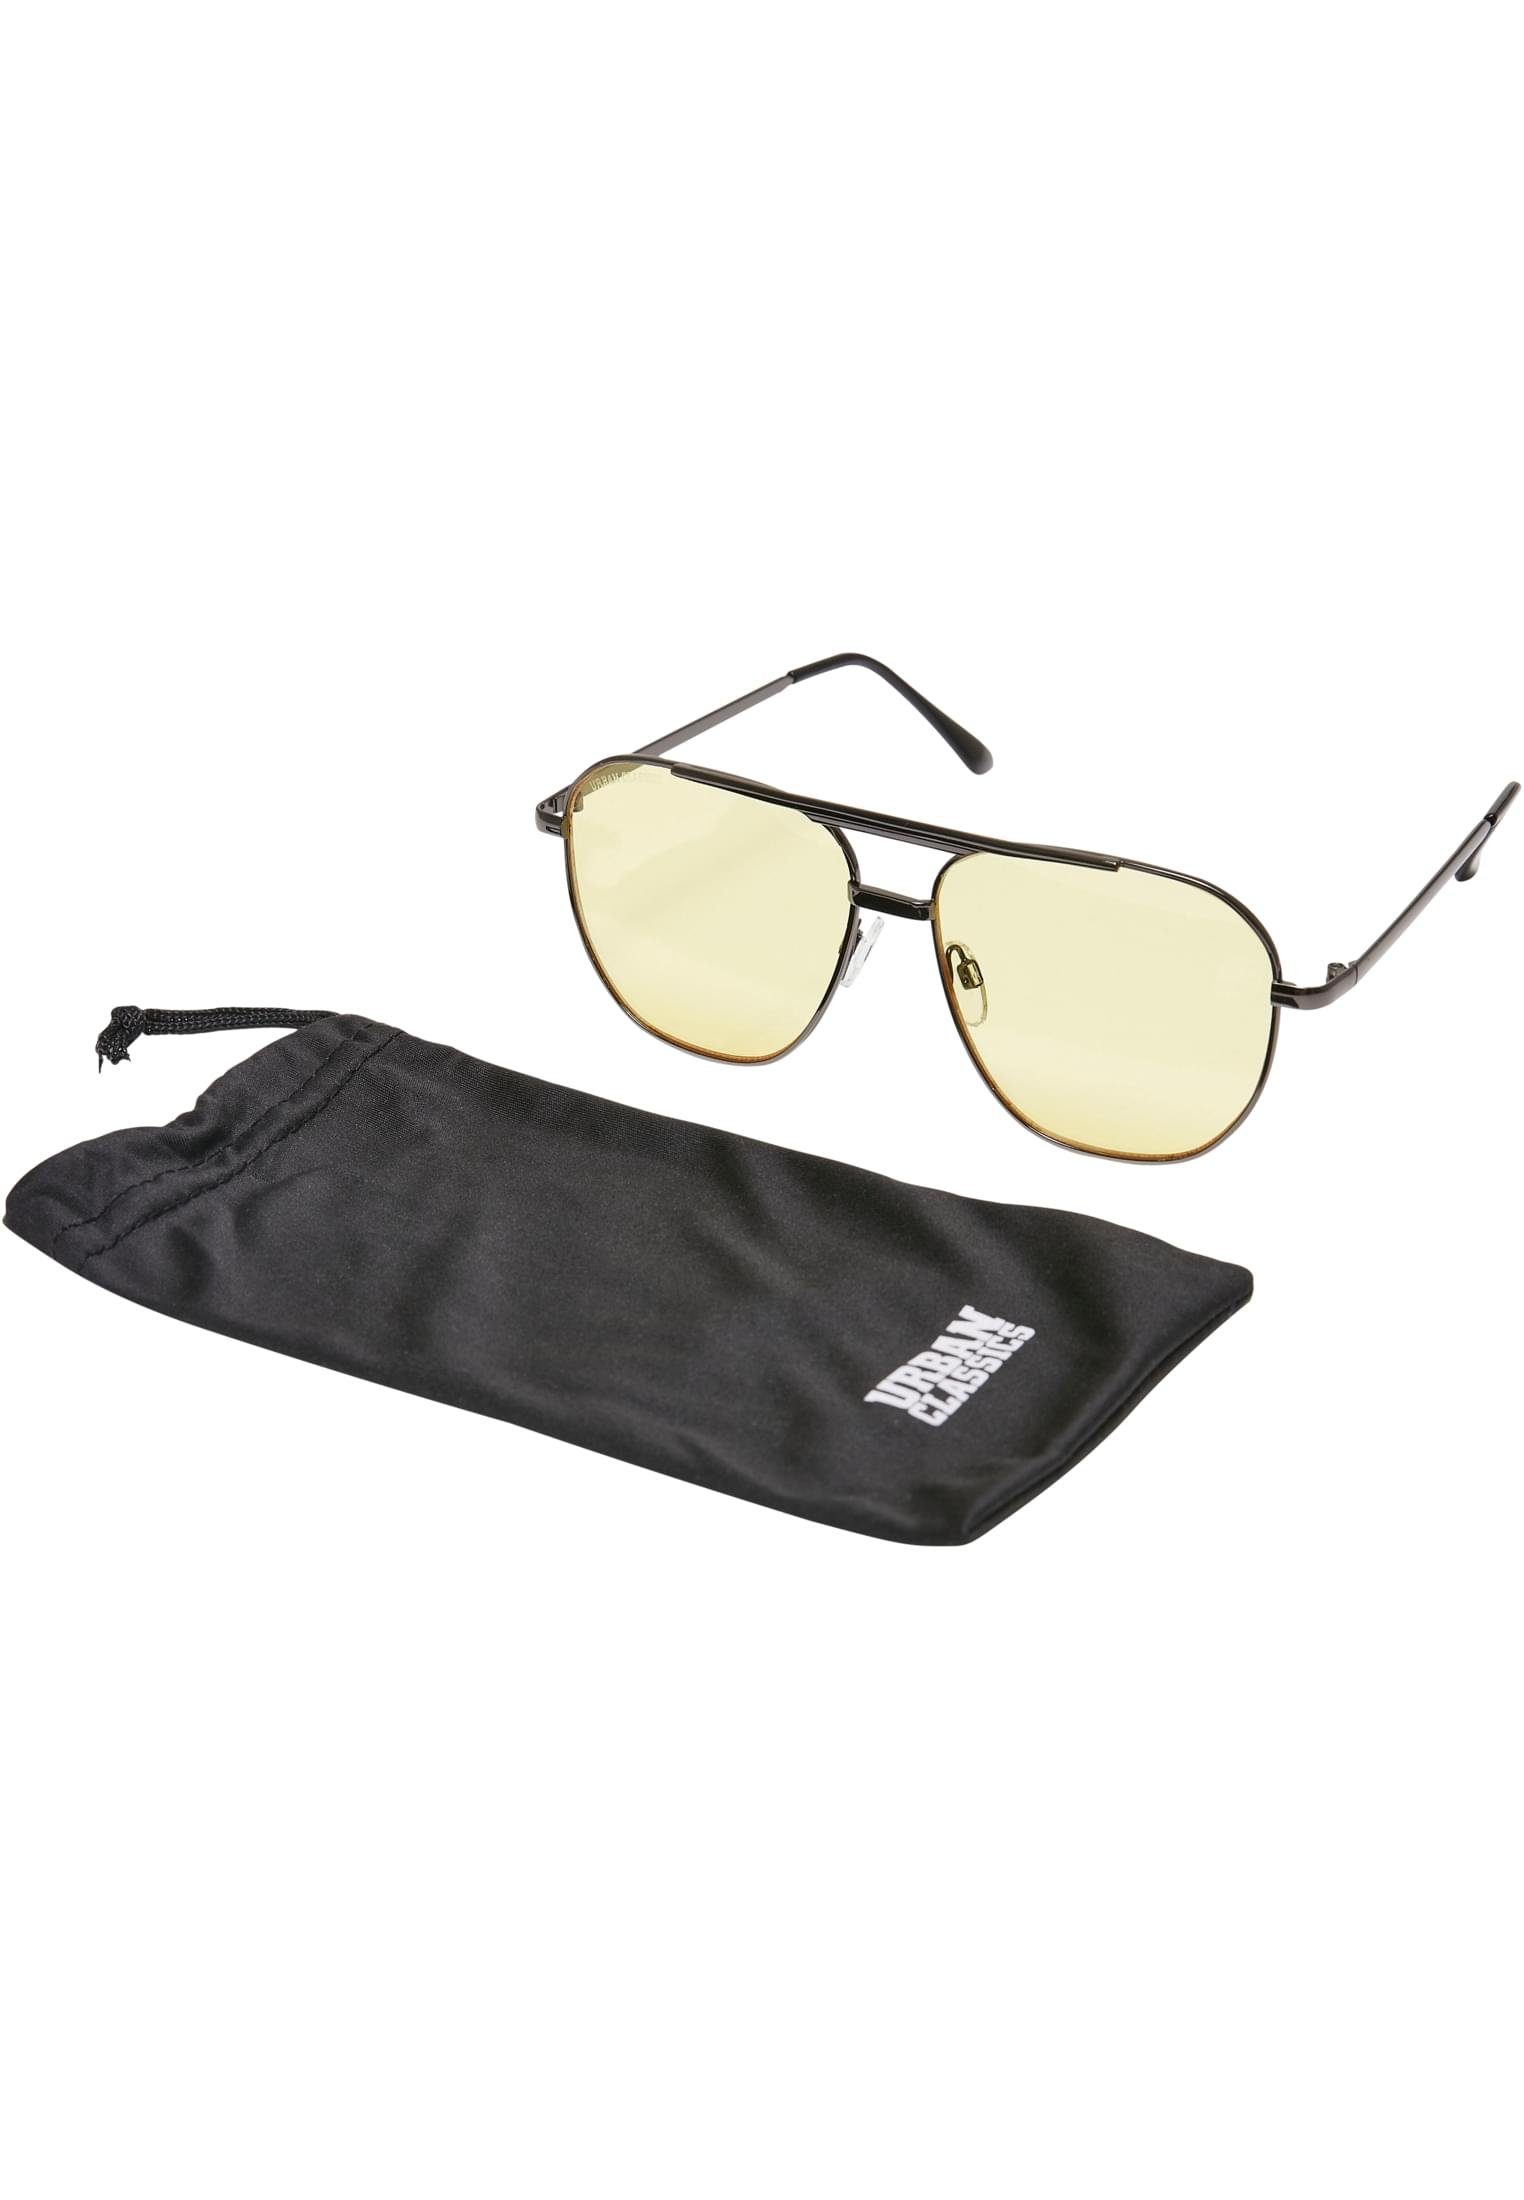 URBAN CLASSICS Sonnenbrille Unisex Sunglasses Manila gunmetal/vintagesun